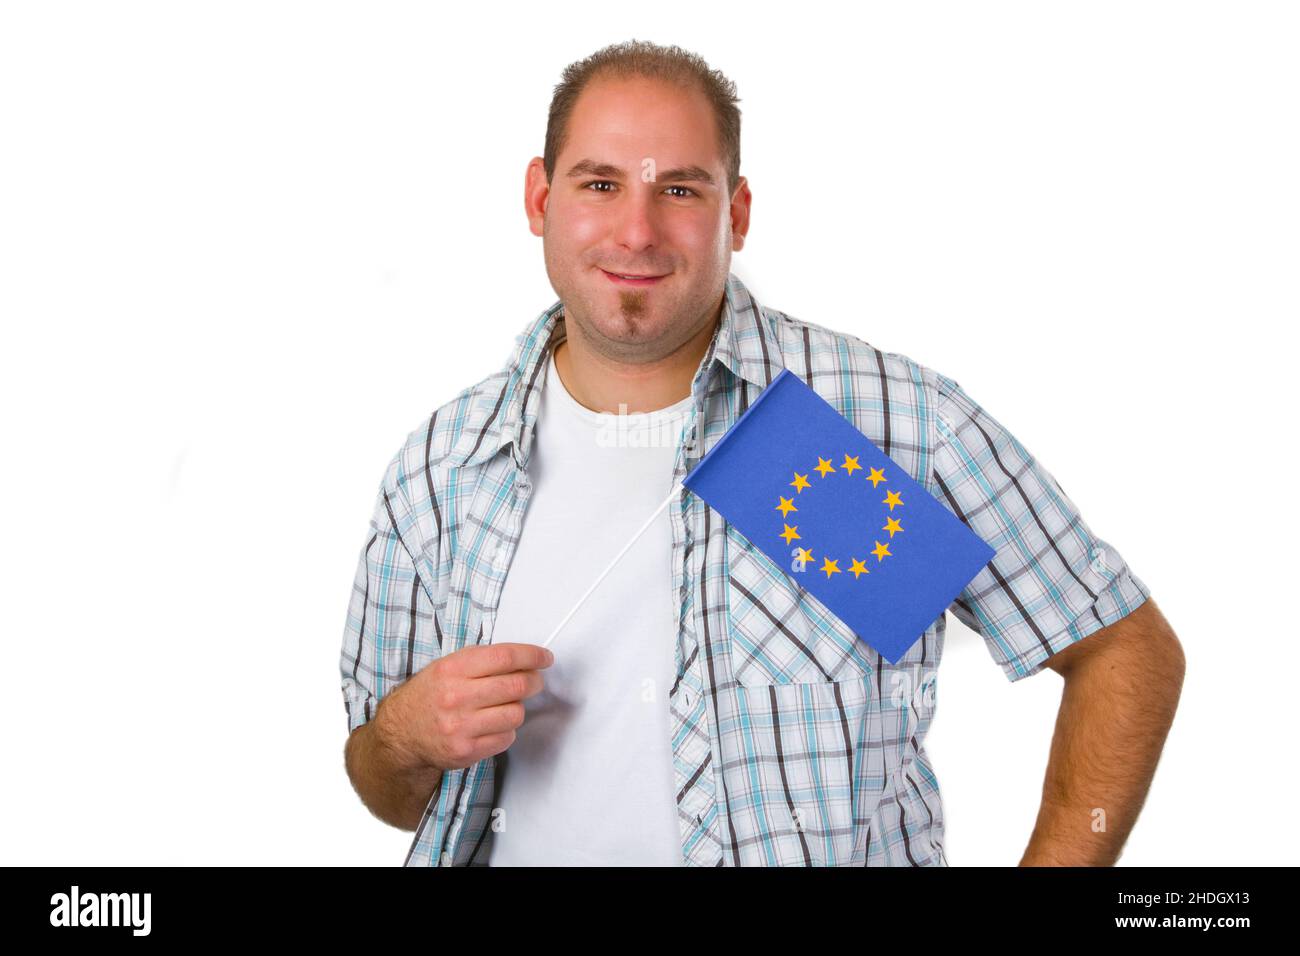 Junger Mann, europa, europäer, europäische Gemeinschaft, flagge der europäischen Union, Mann, Mann, Männer, jung, europäer, europäische Gemeinschaften, europäische Union Stockfoto